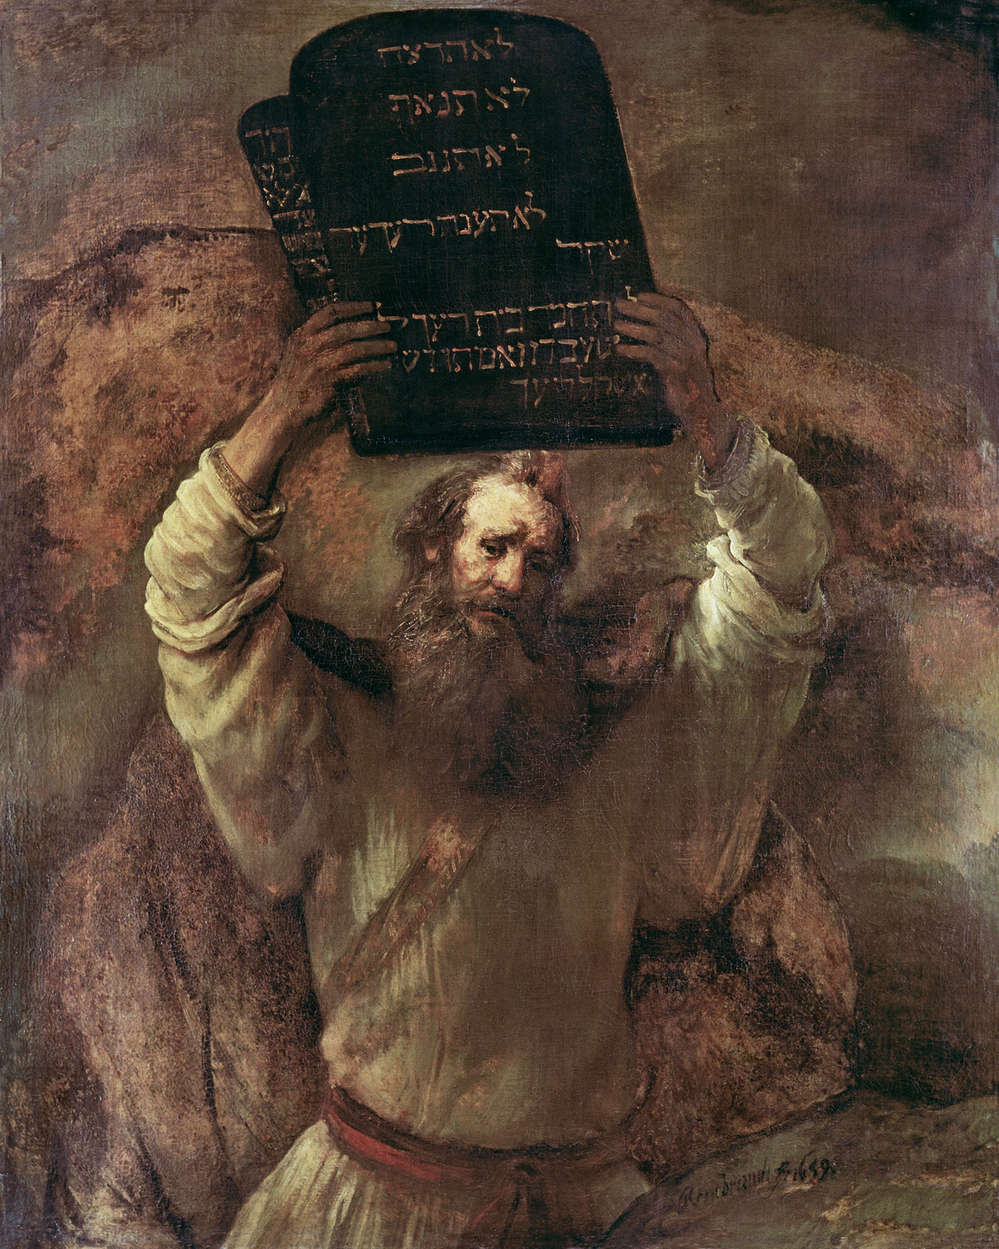             Mosè rompe le tavole della Legge", murale di Rembrandt van Rijn
        